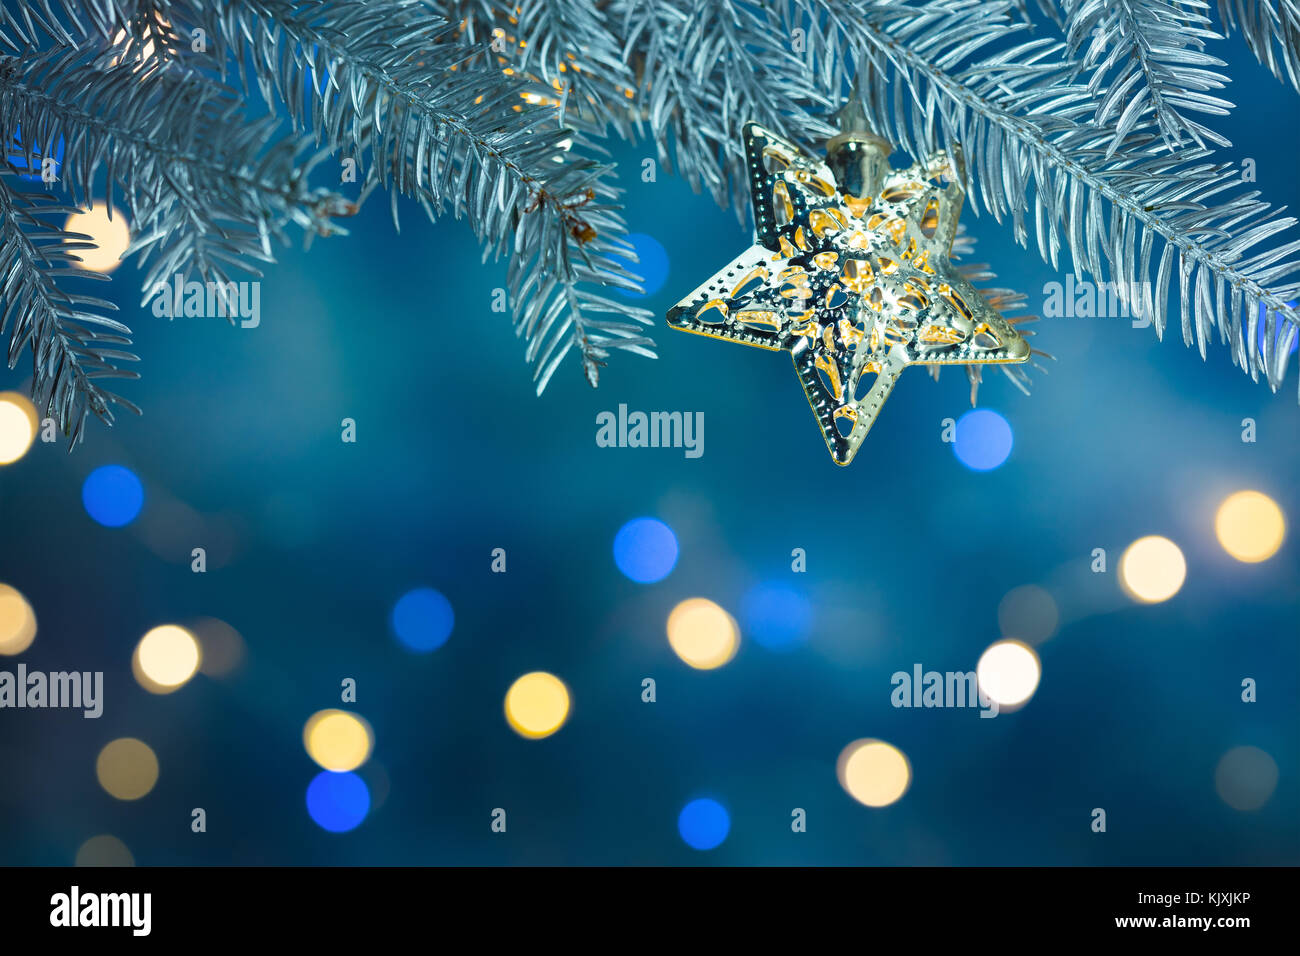 Weihnachten Baum mit stern dekoration auf unscharfen Hintergrund blau mit bunten Lichtpunkte Stockfoto